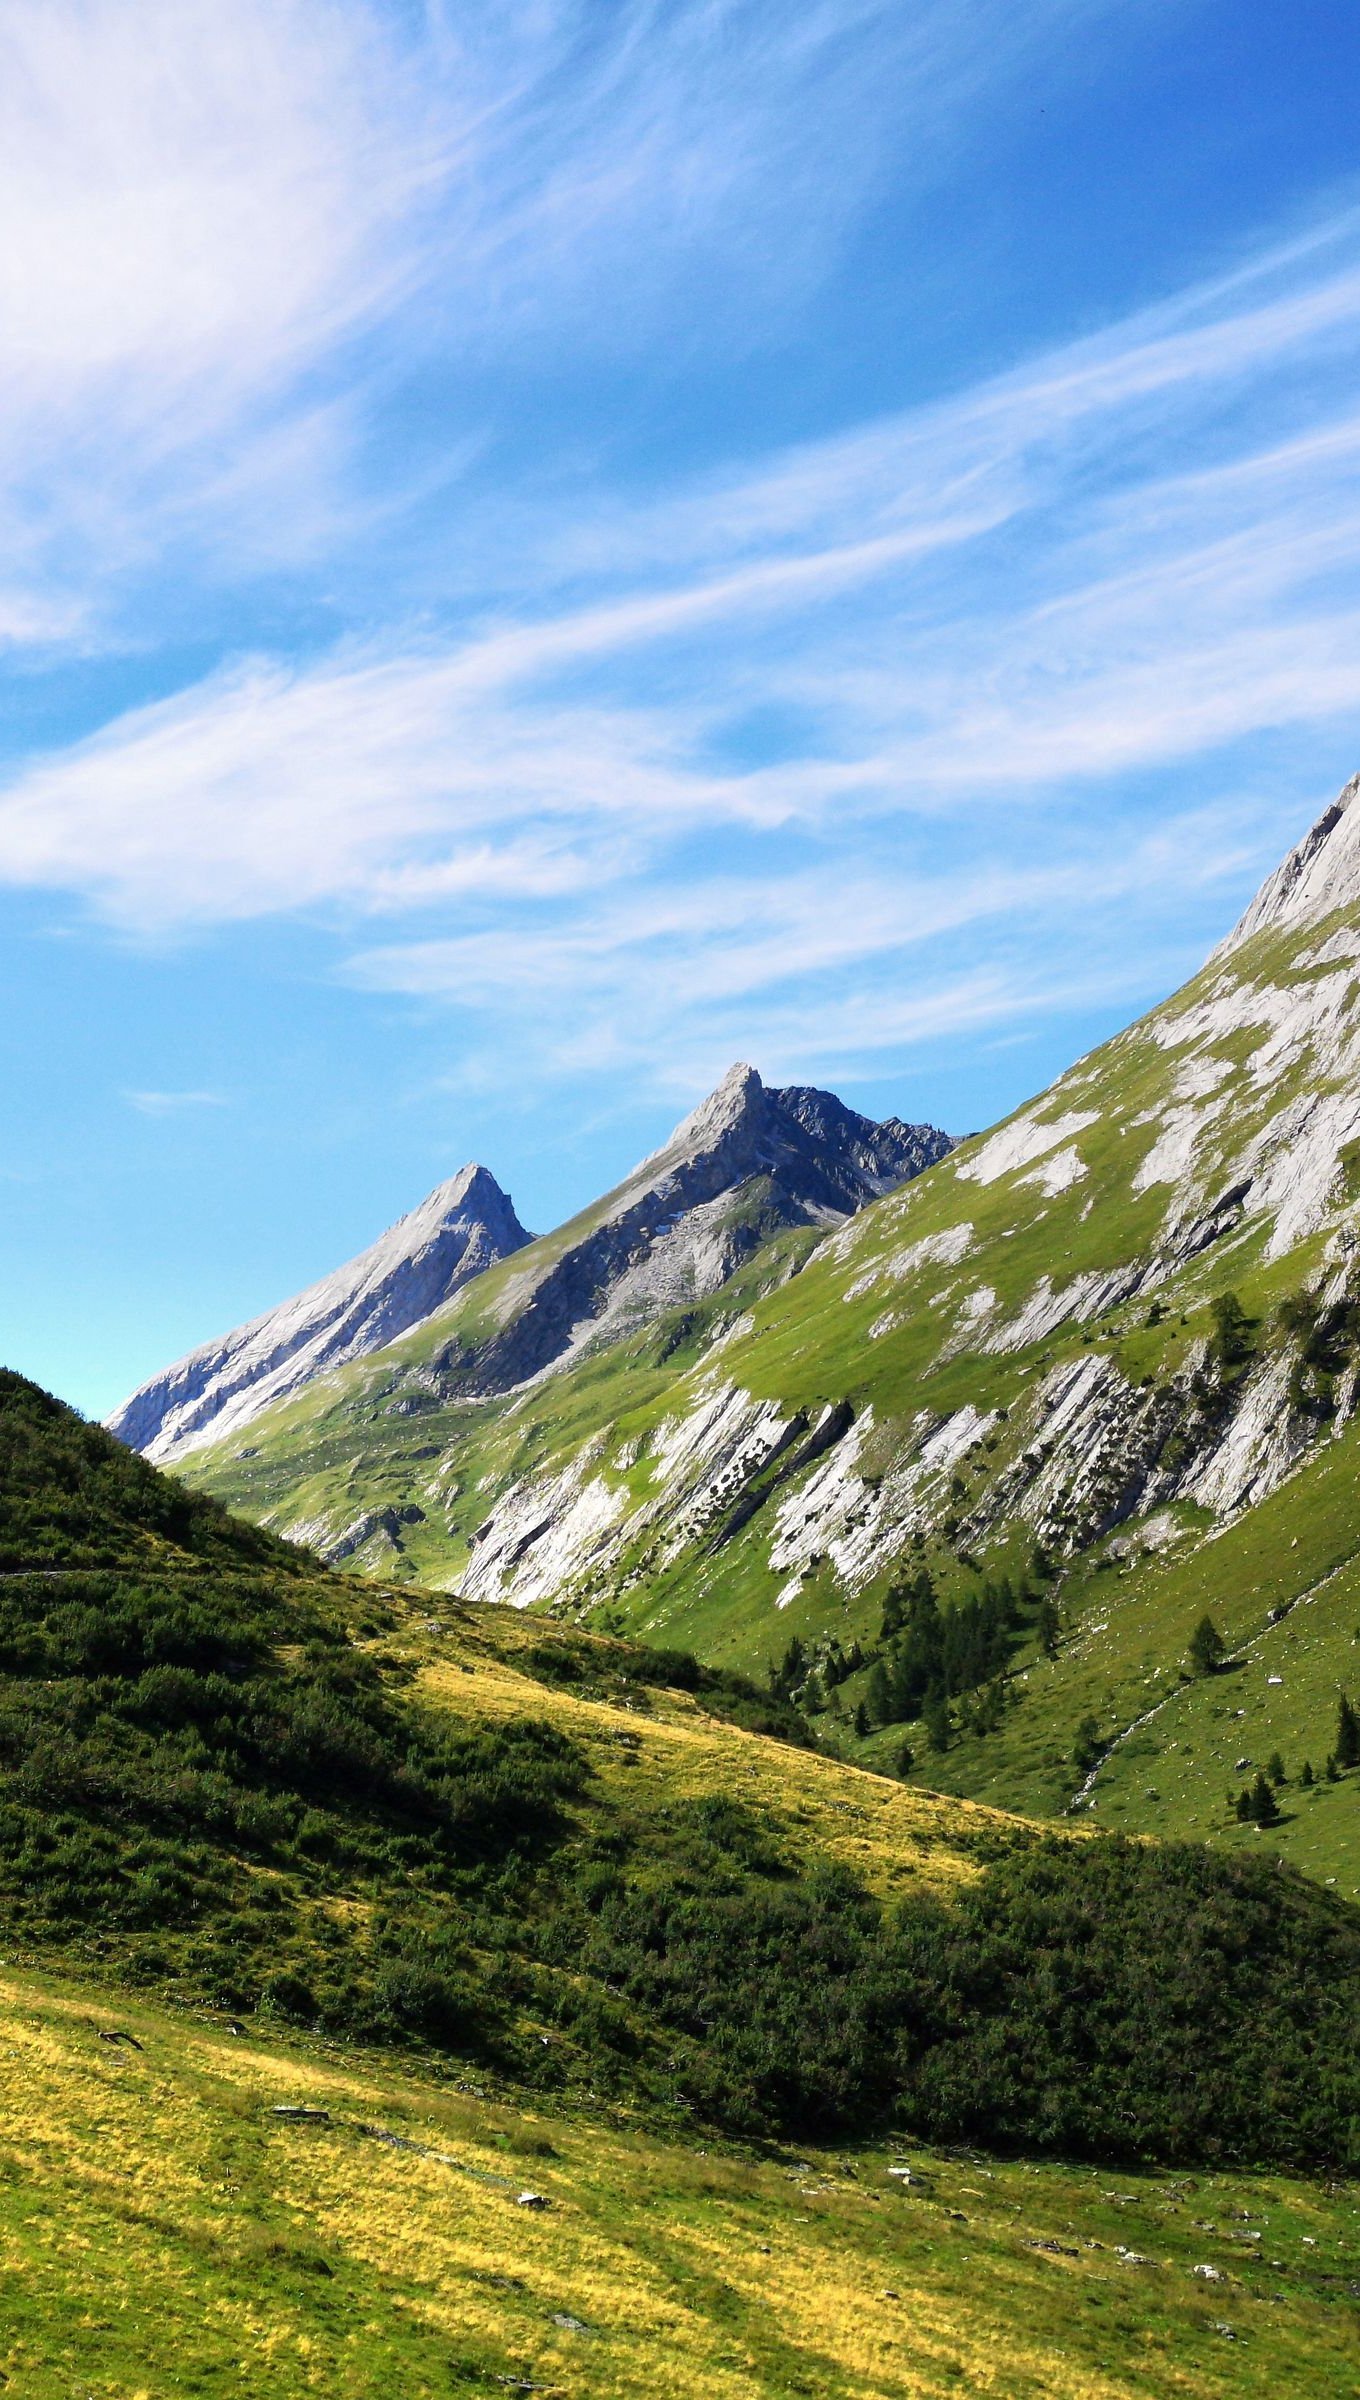 Fondos de pantalla Montañas en paisaje verde Vertical